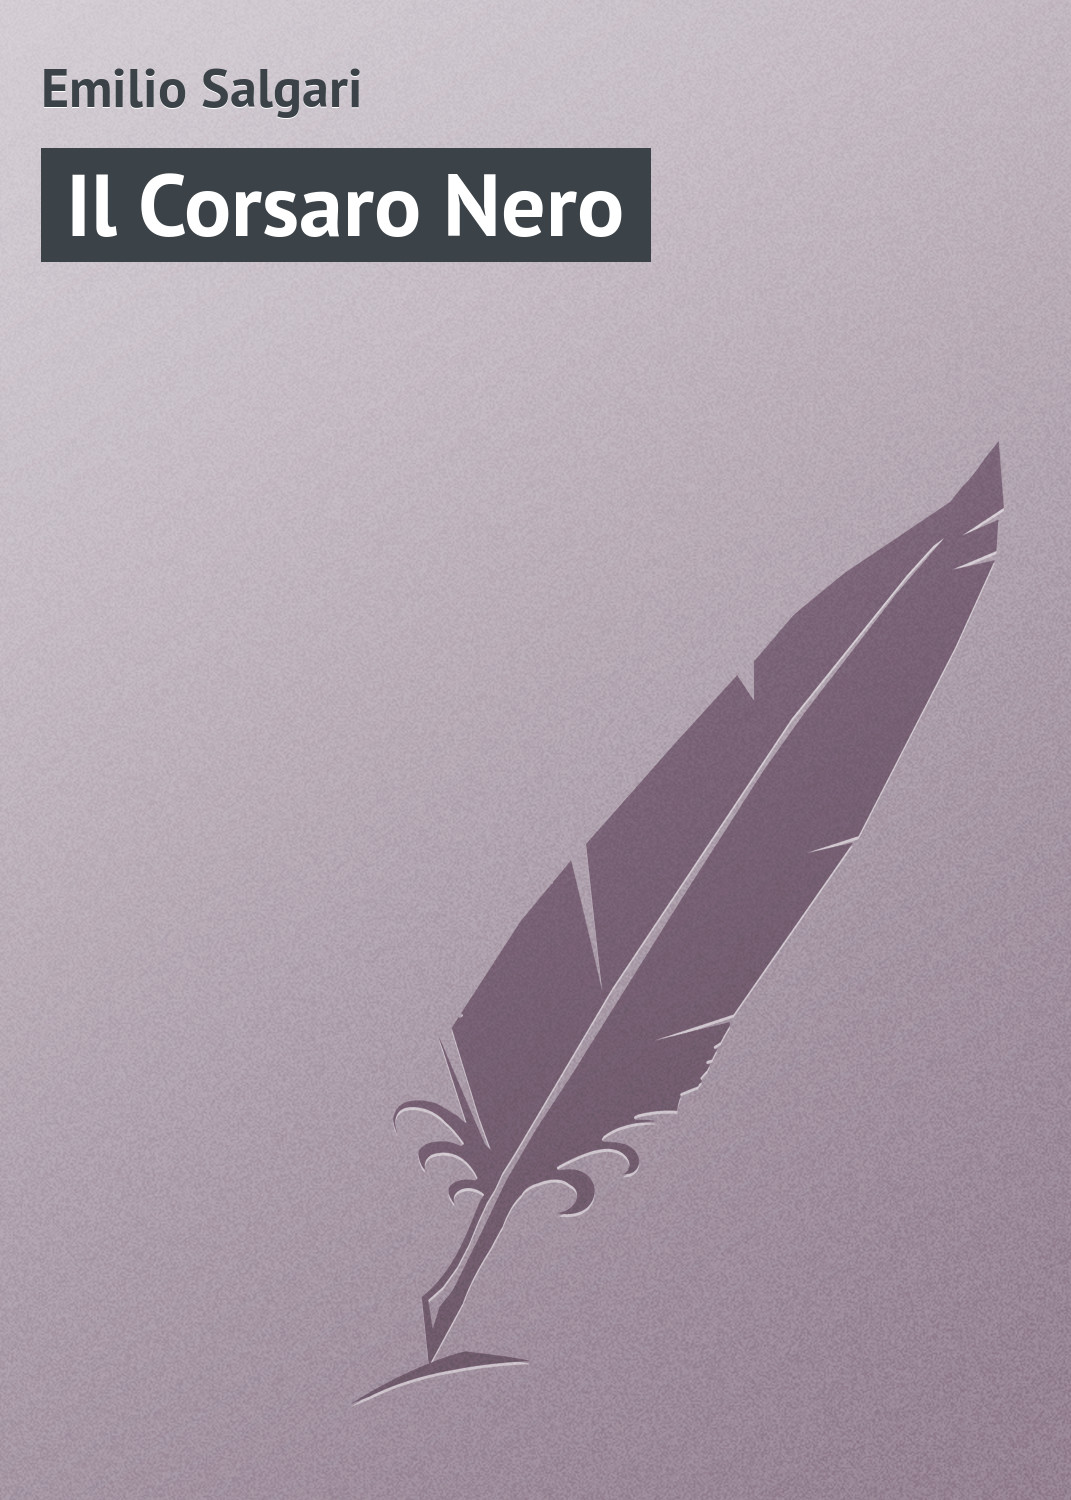 Книга Il Corsaro Nero из серии , созданная Emilio Salgari, может относится к жанру Зарубежная старинная литература, Зарубежная классика. Стоимость электронной книги Il Corsaro Nero с идентификатором 21104062 составляет 5.99 руб.